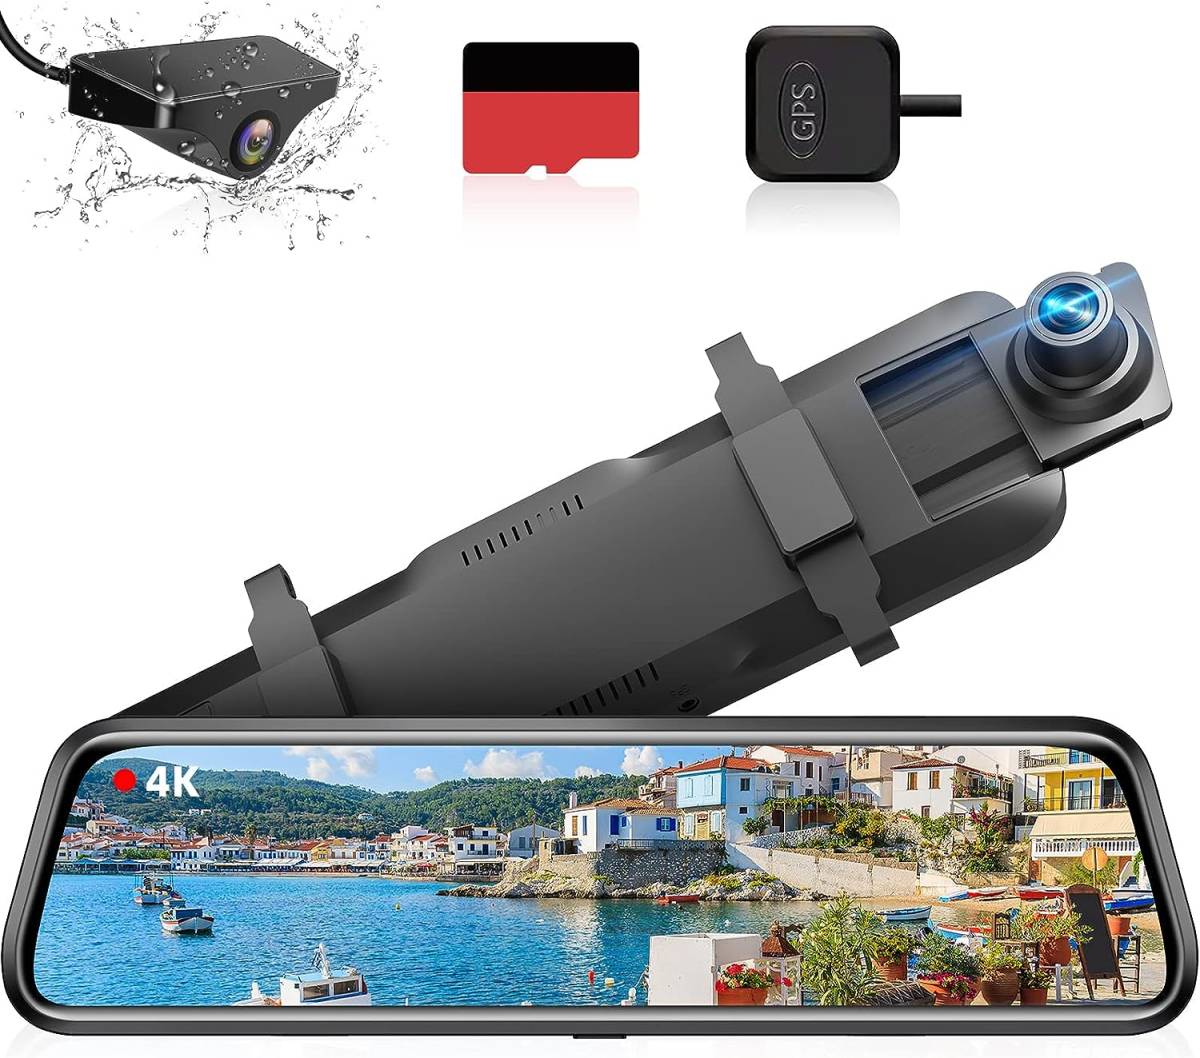 4K ドライブレコーダー ミラー型 【伸縮式カメラ】.【64GB高速SDカード付き】4K解像度 10インチ 右カメラ GPS搭載 防水構造リアカメラ